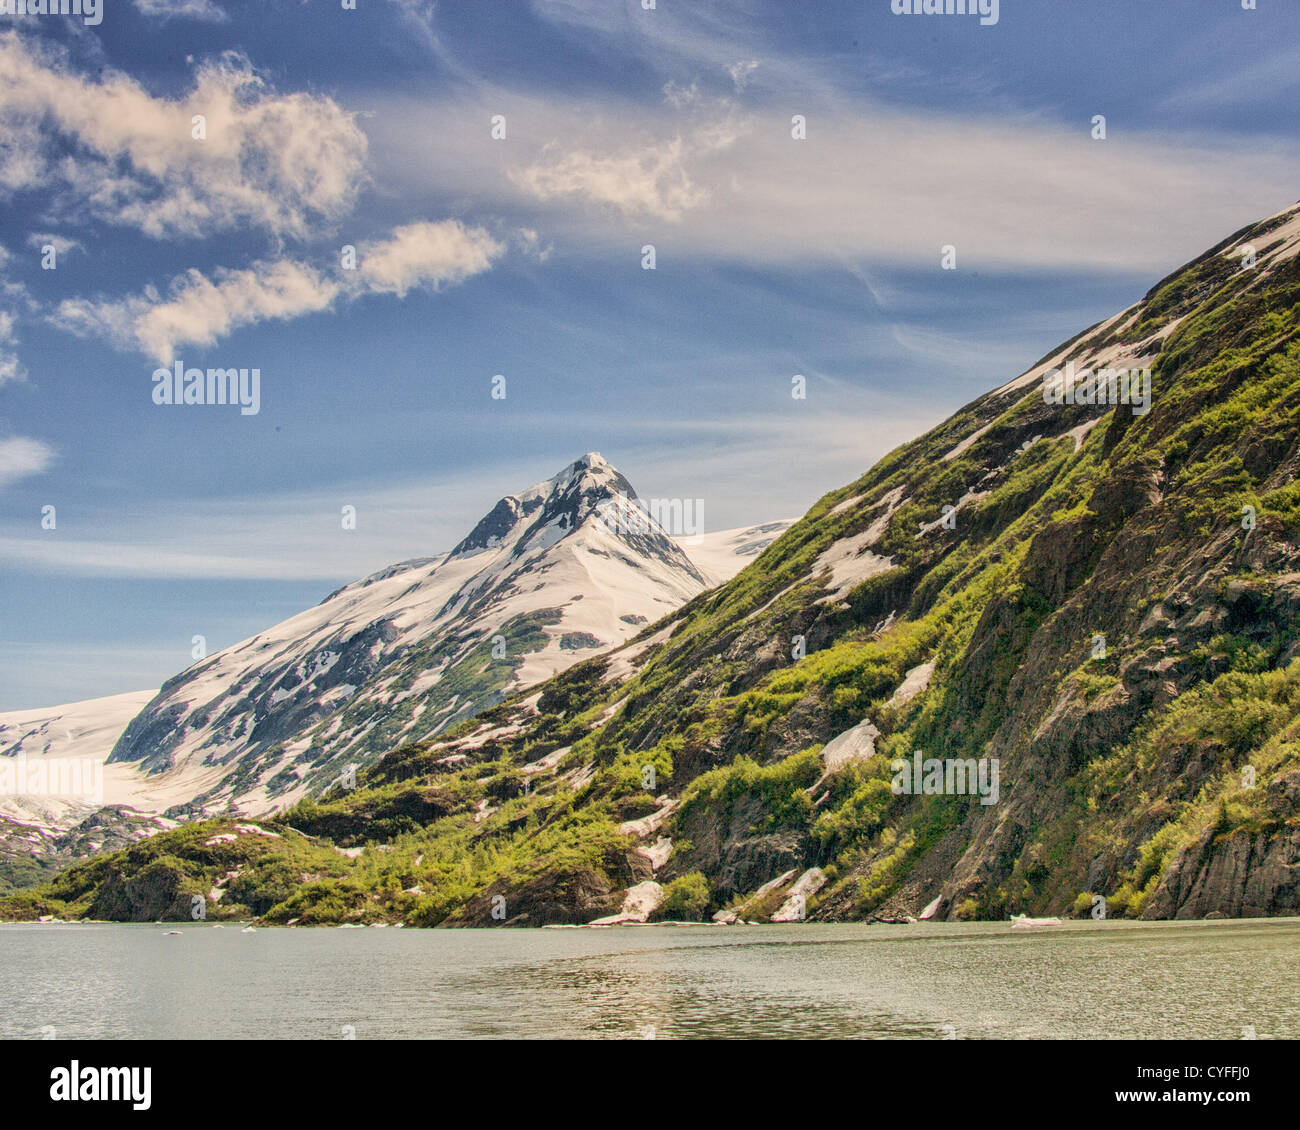 Junio 29, 2012 - Península Kenai, Alaska, EE.UU. - el hermoso Lago de Portage y sus alrededores, picos nevados de las montañas Chugach están en la Península Kenai dentro del Bosque Nacional Chugach. El lago fue creado detrás de la Morrena terminal del Glaciar Portage como comenzó a disminuir. Los terminus del glaciar ha retrocedido casi 5 kilómetros hasta su ubicación actual. Lago y Glaciar Portage es la atracción turística más visitada en Alaska. (Crédito de la Imagen: © Arnold Drapkin/ZUMAPRESS.com) Foto de stock